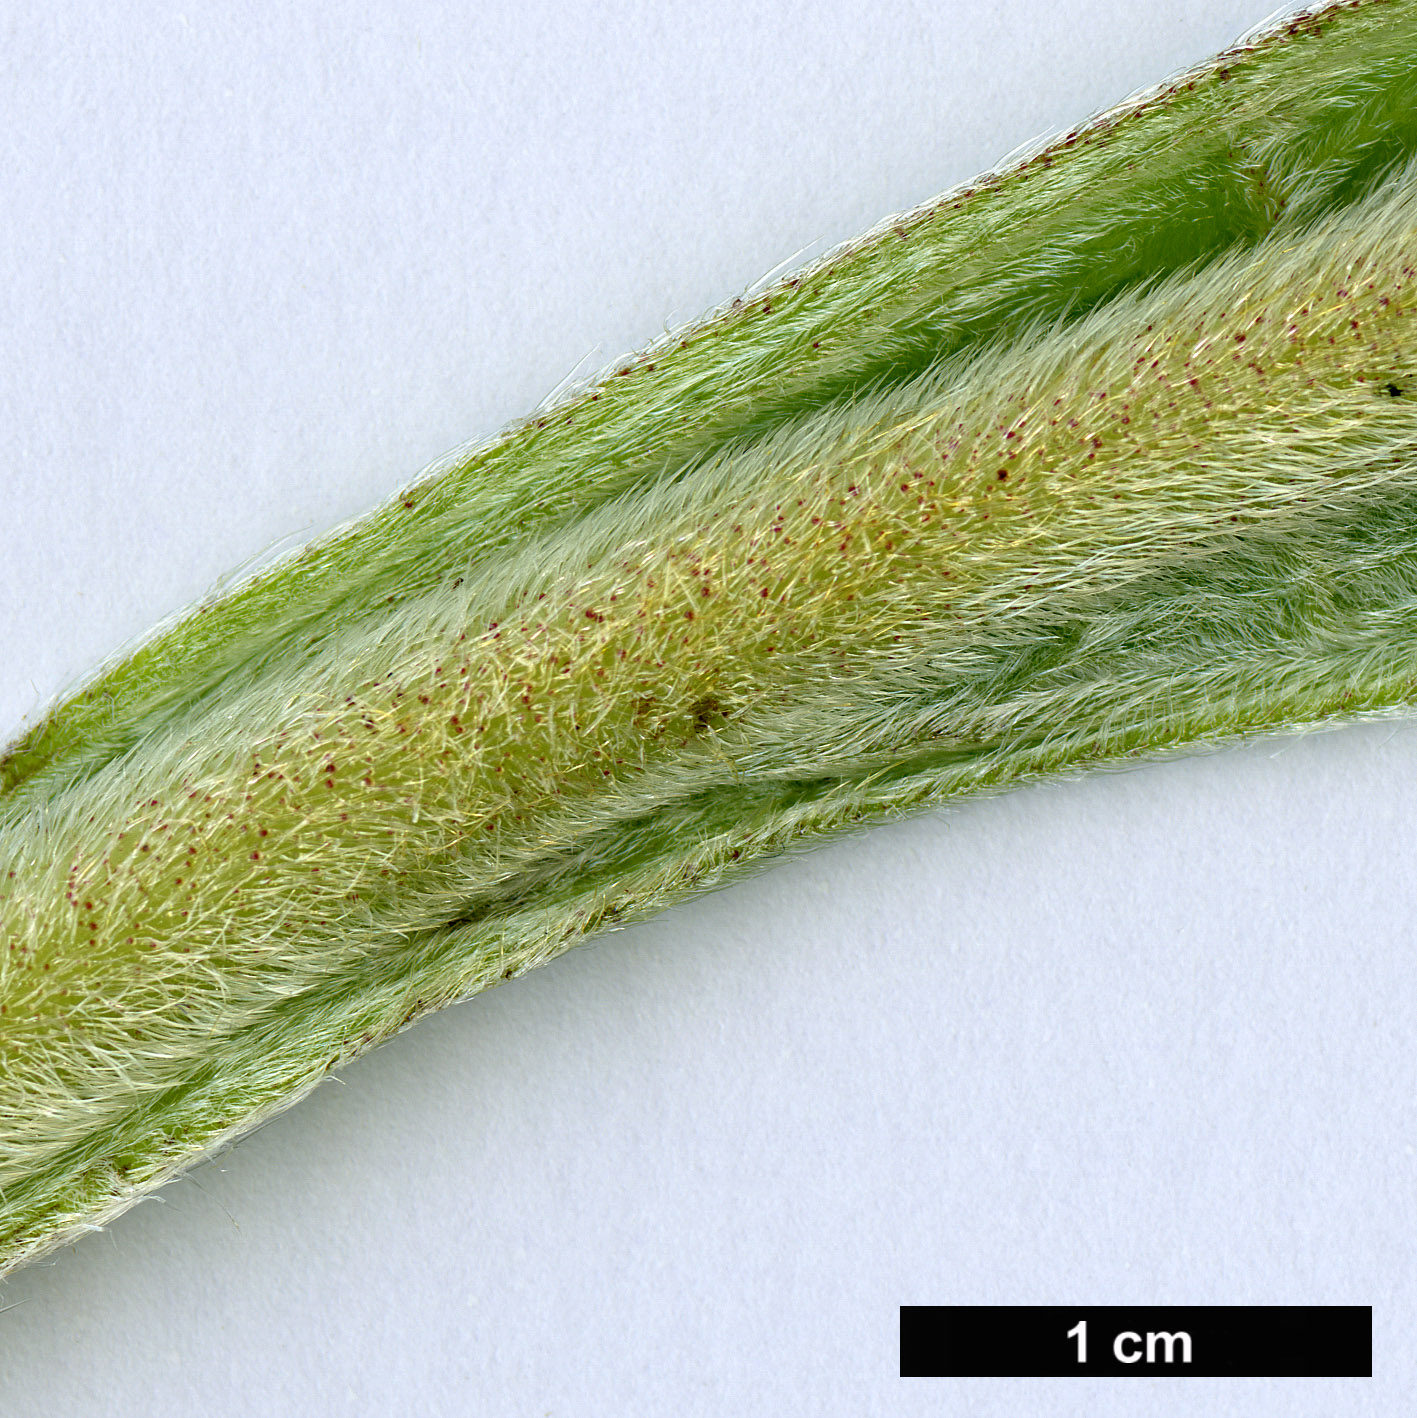 High resolution image: Family: Boraginaceae - Genus: Echium - Taxon: pininana